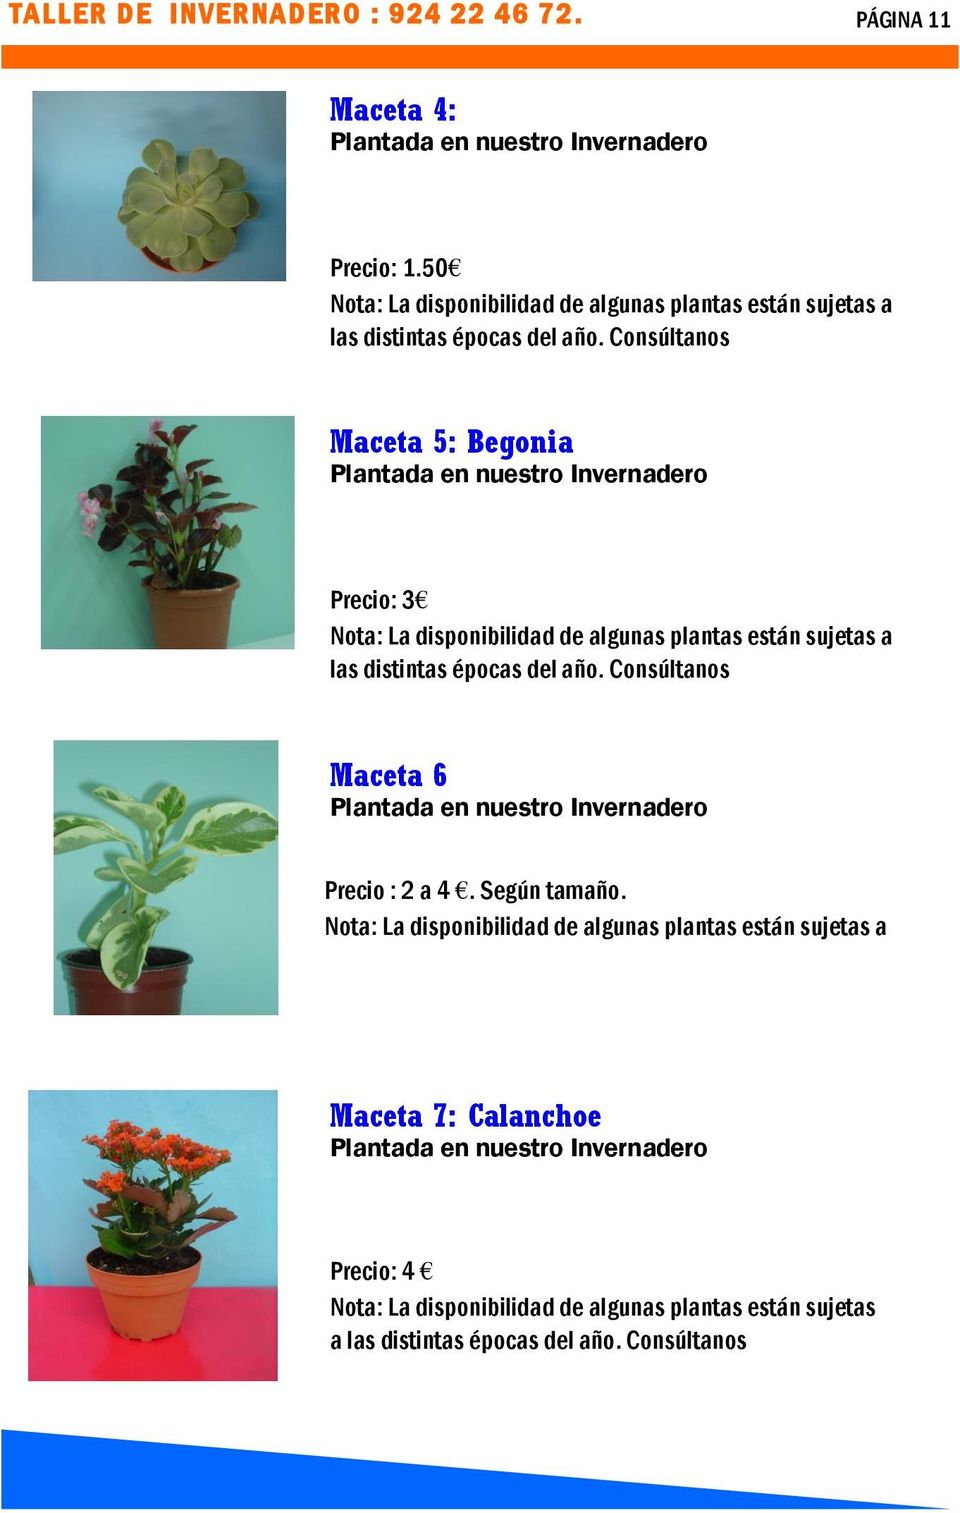 Consúltanos Maceta 5: Begonia Plantada en nuestro Invernadero Precio: 3 Nota: La disponibilidad de algunas plantas están sujetas a las distintas épocas del año.